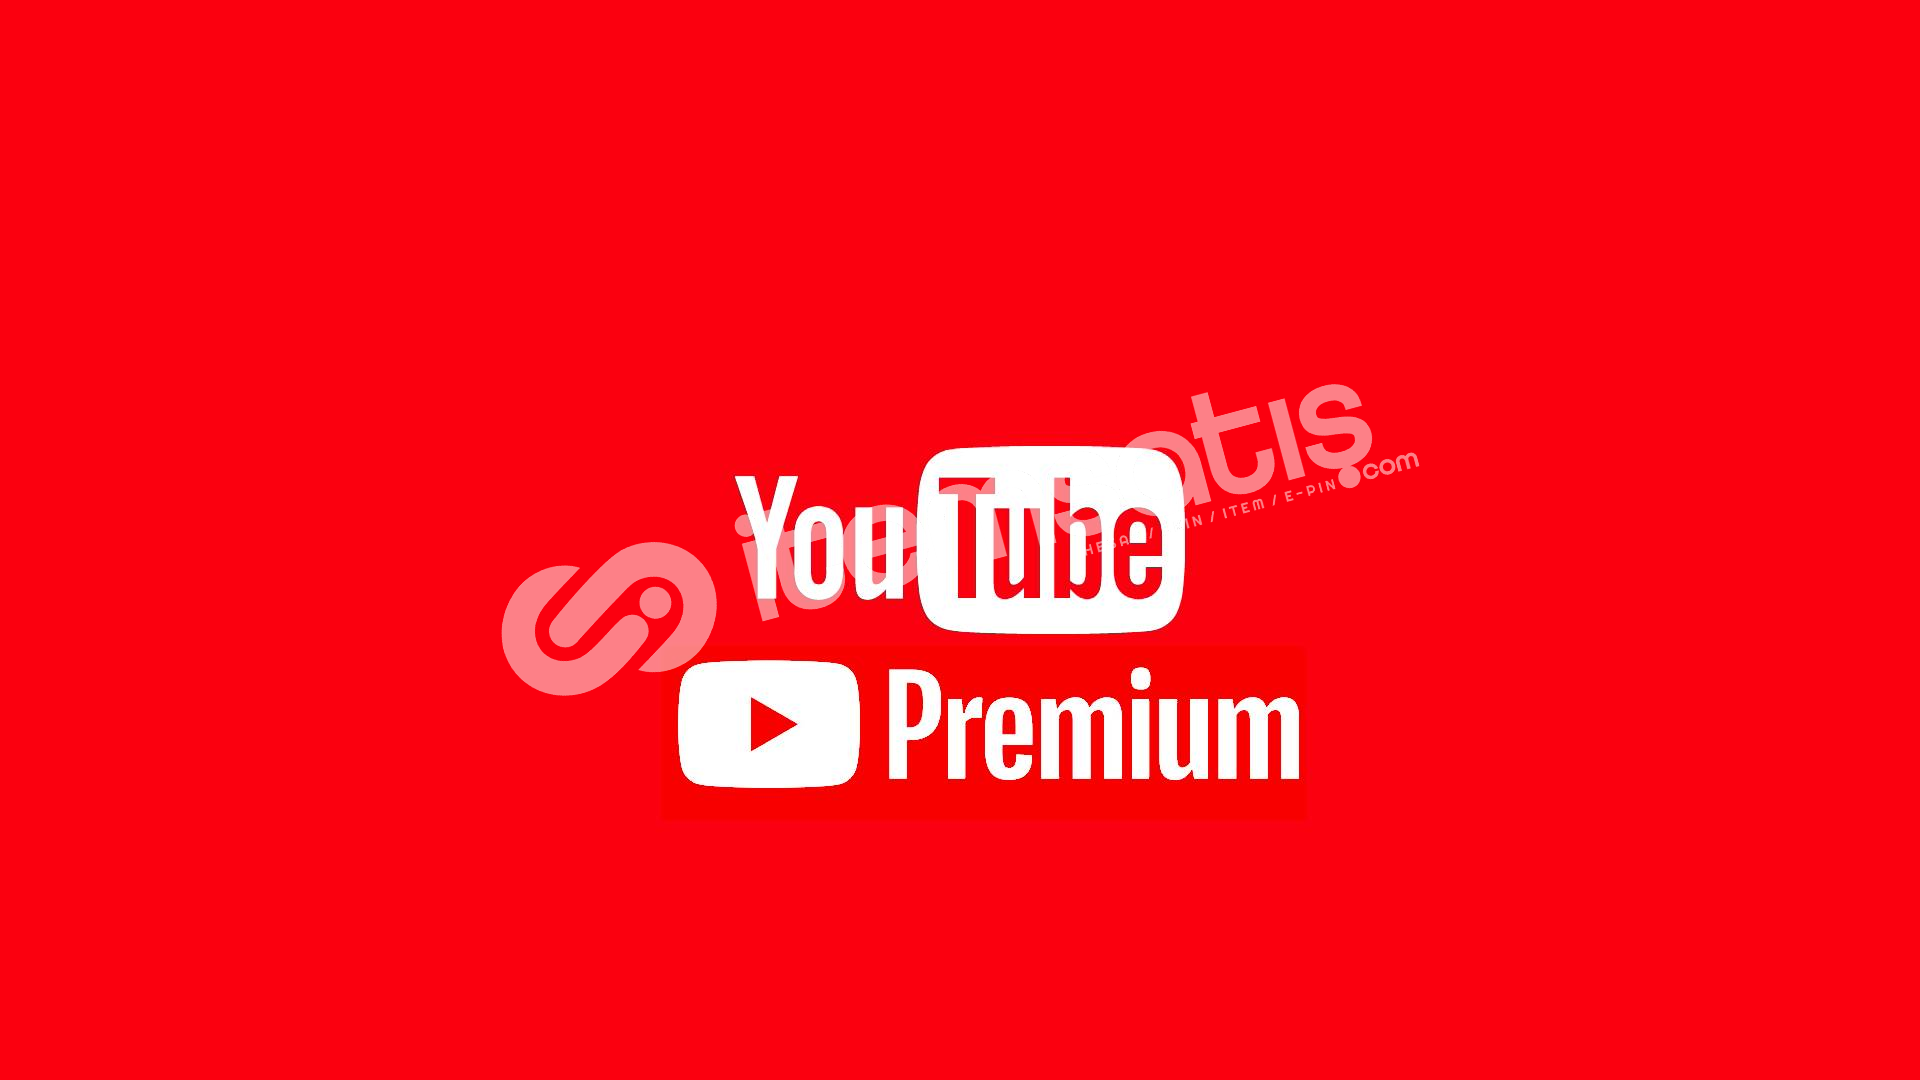 Ютуб премиум обновить. Youtube Premium. Ютуб премиум. Ютуб премиум картинка. Подписка ютуб премиум.